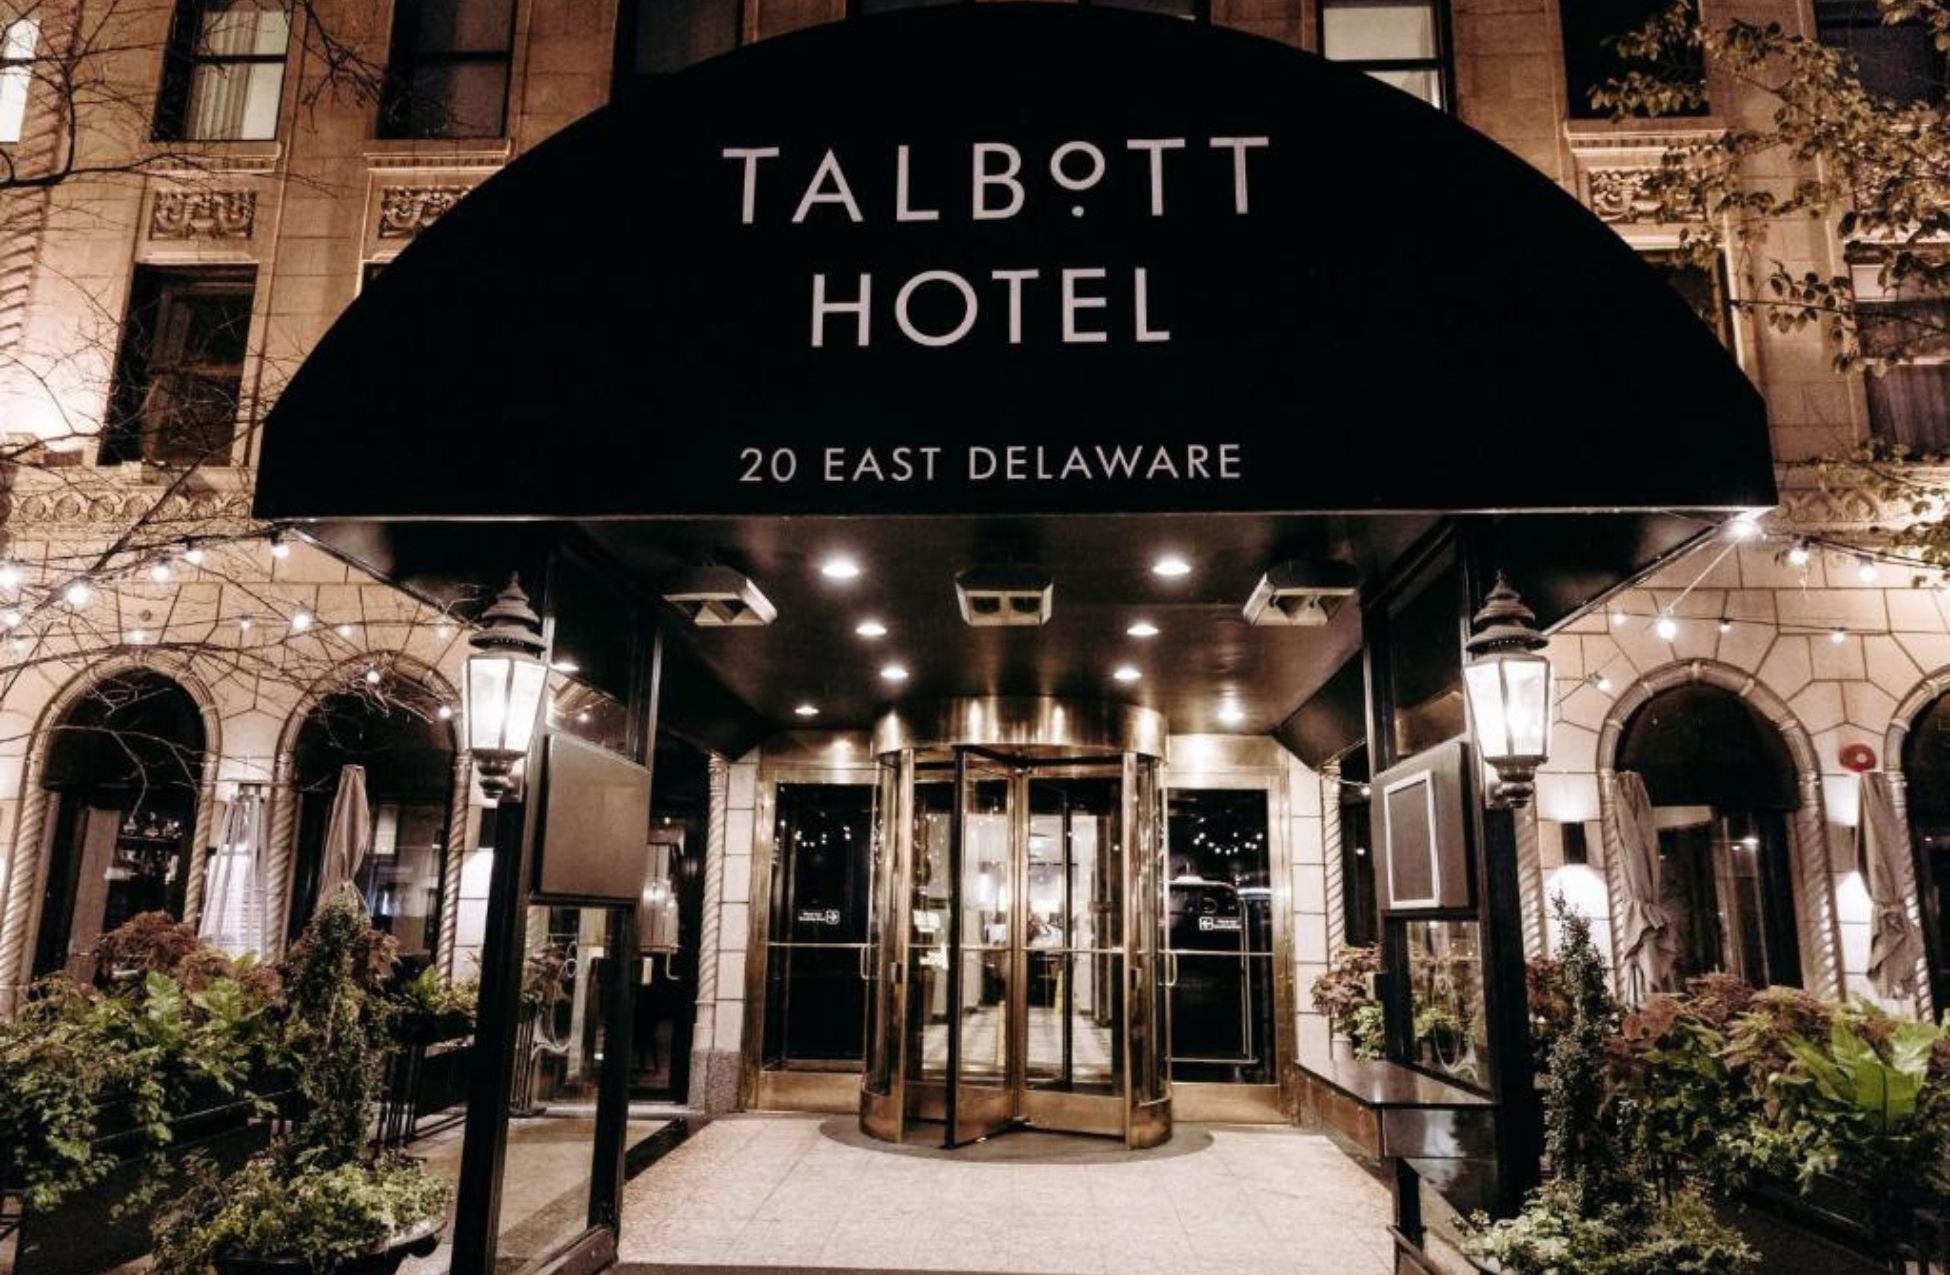 The Talbott Hotel - Best Hotels In Chicago